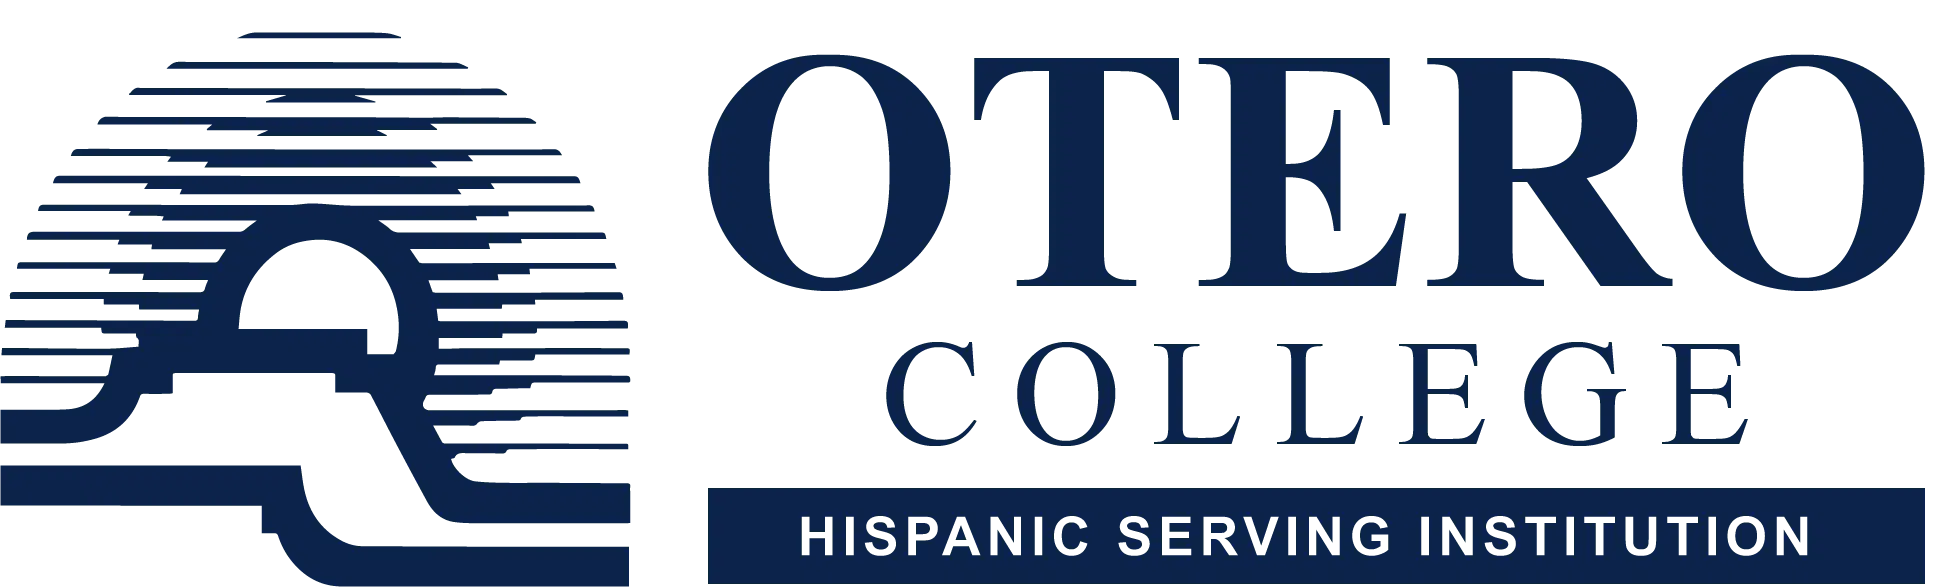 Otero College - Hispanic Serving Institution